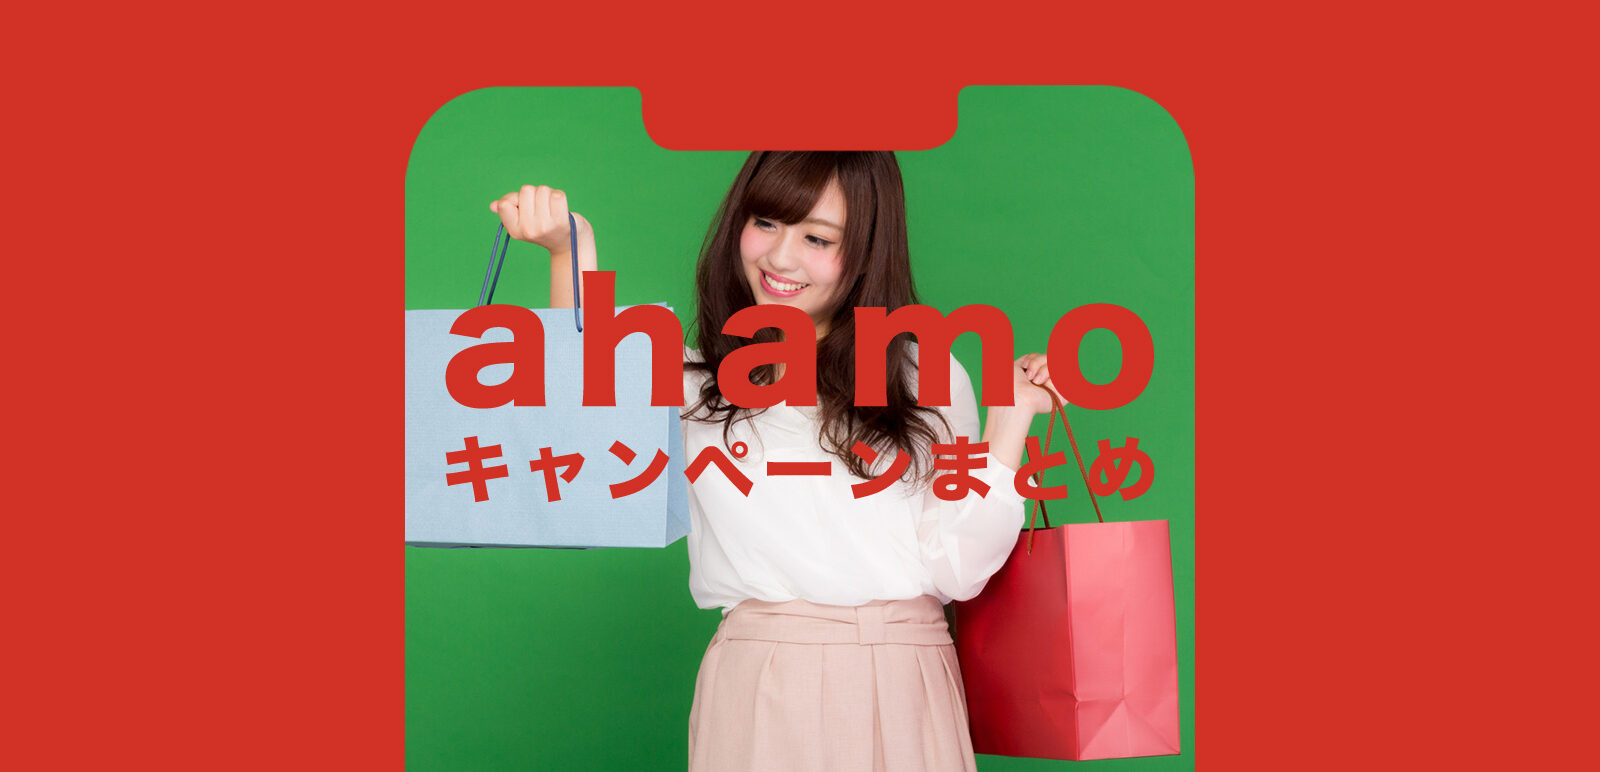 ahamo(アハモ)のキャンペーンまとめ【2022年1月最新】のサムネイル画像